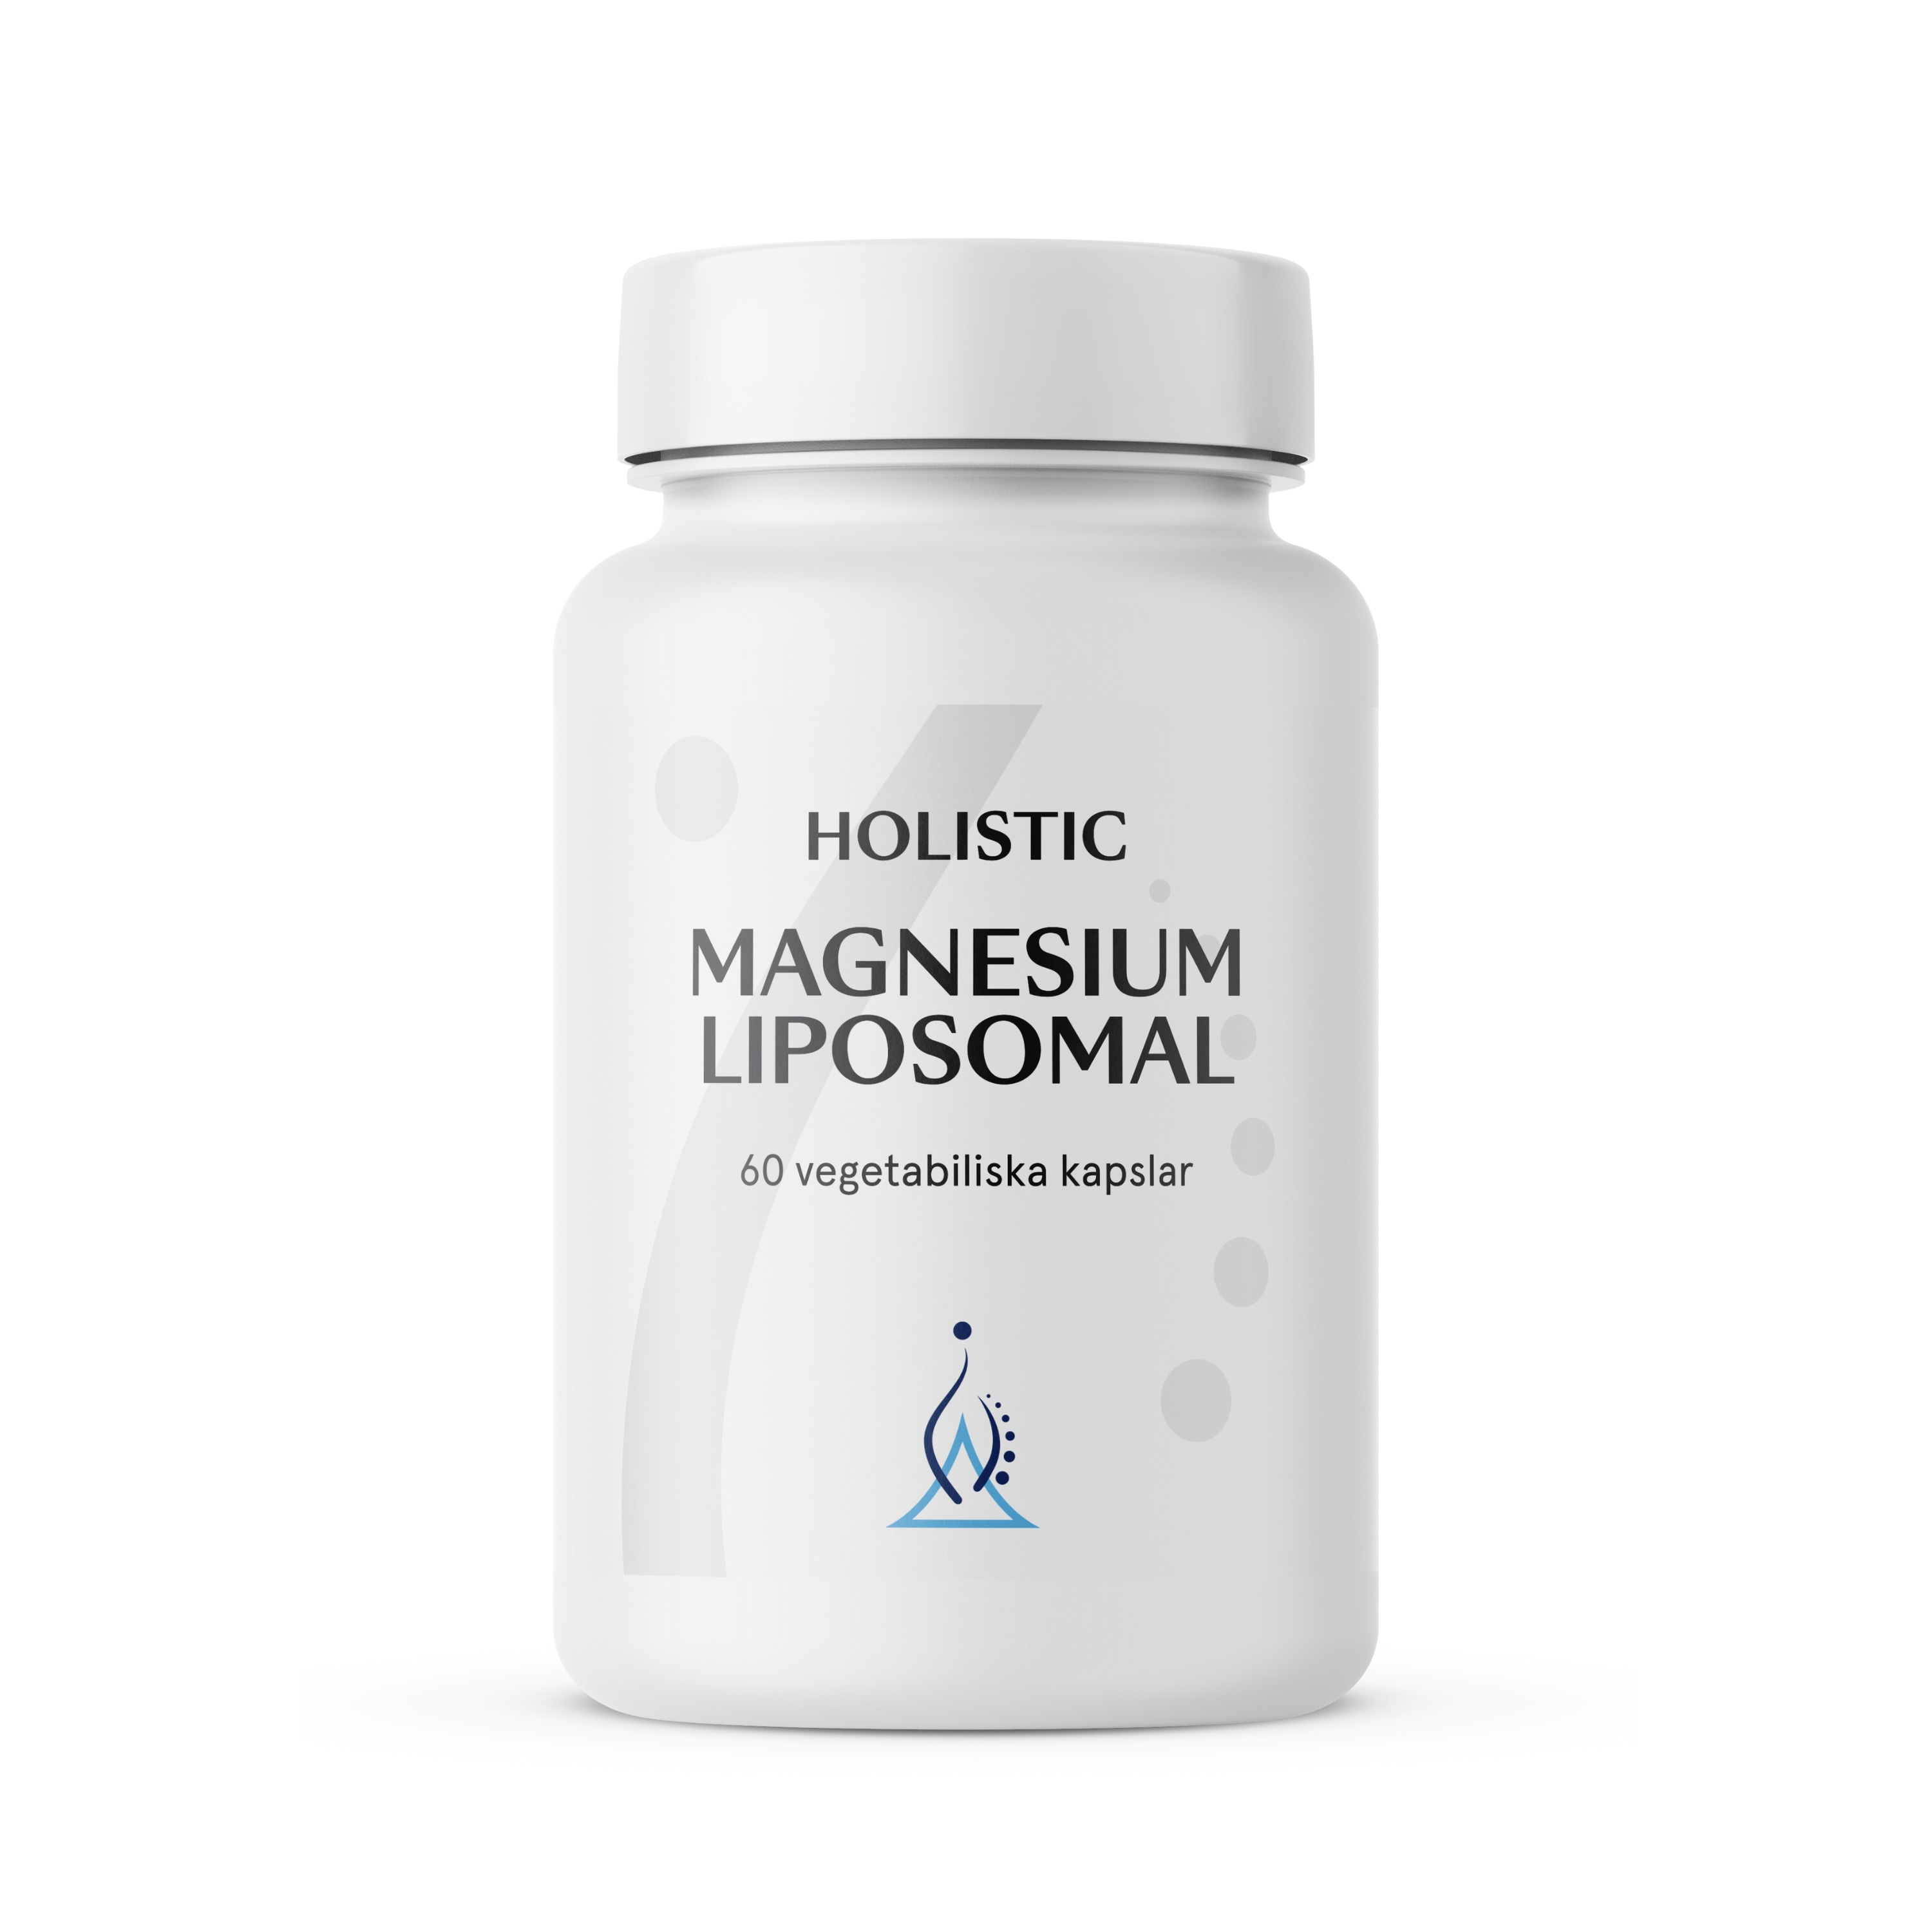 Magnesium liposomal 60k